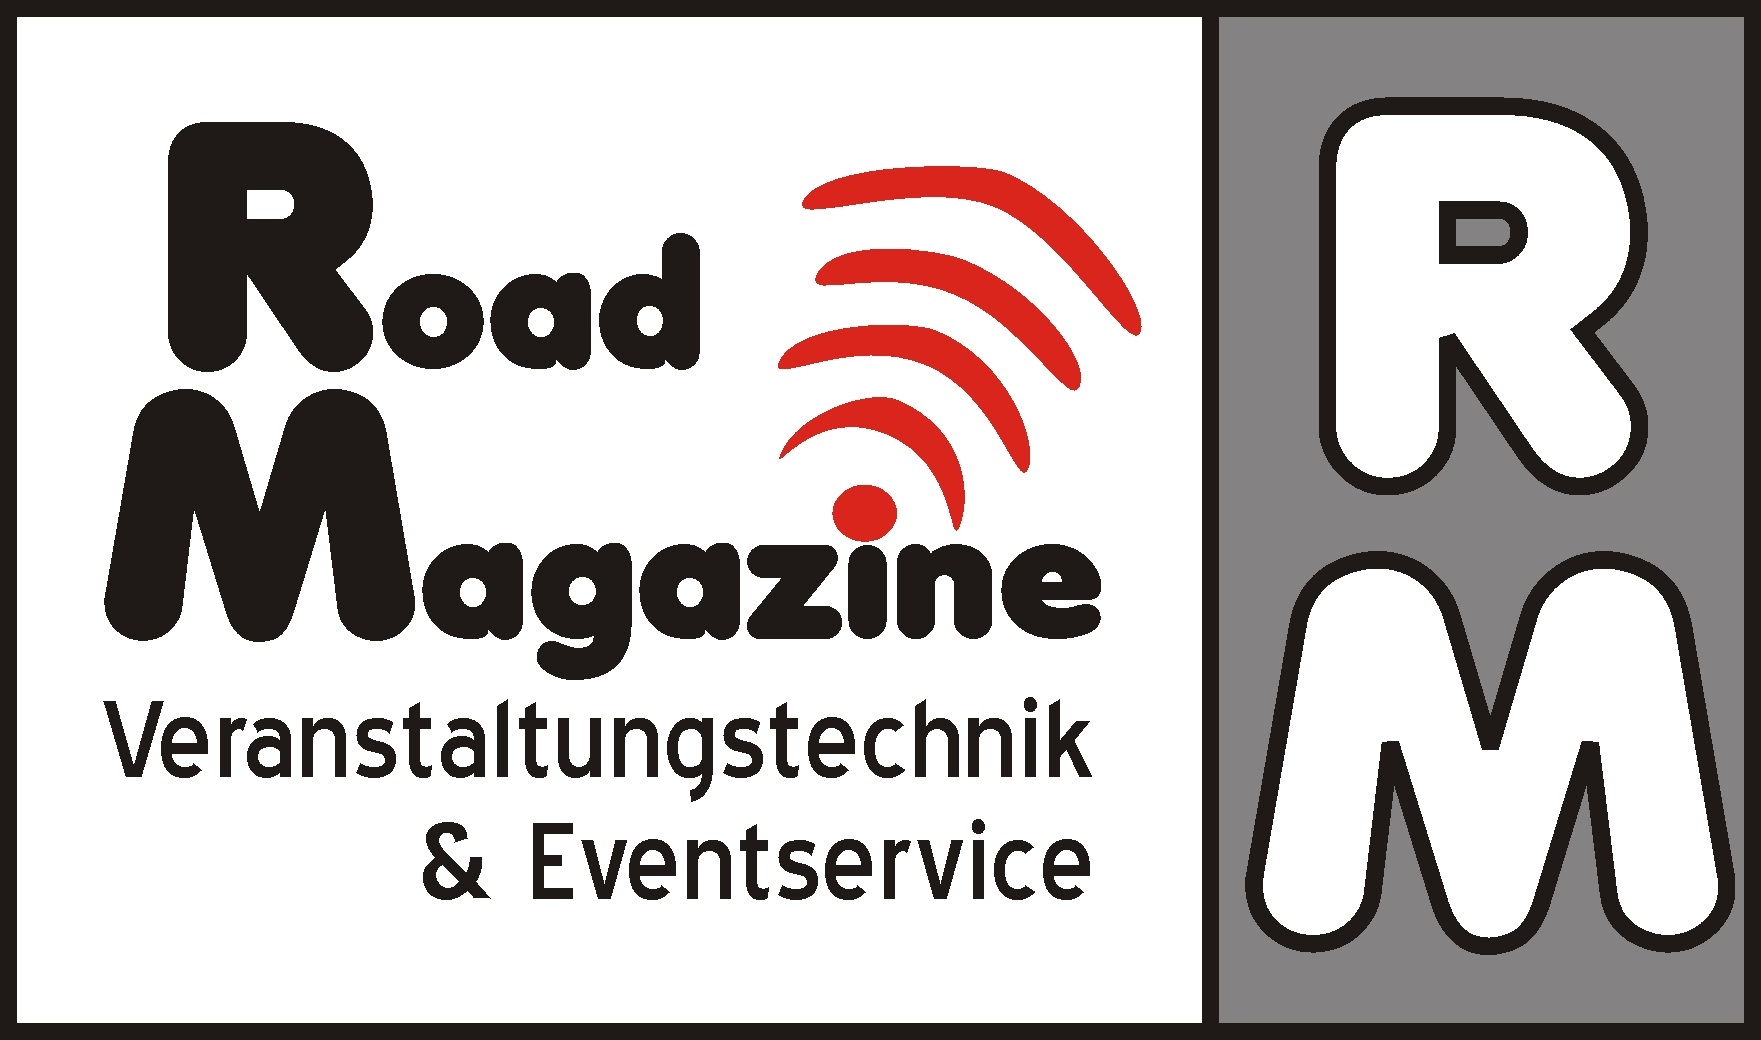 Road Magazine Veranstaltungstechnik & Eventservice